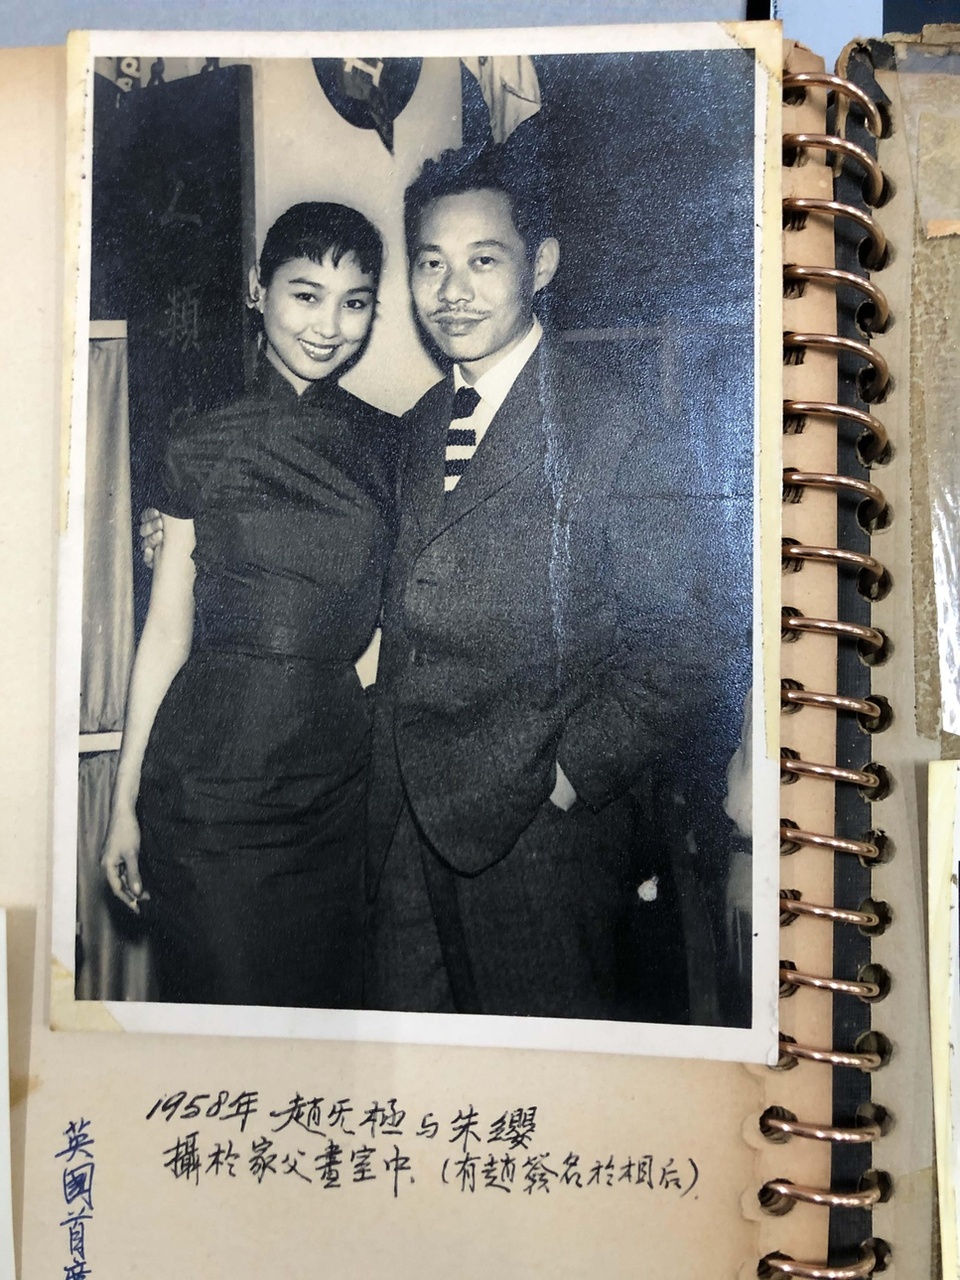 May Zao and Zao Wou-Ki at the studio of Lui
Canming (Lui Shou-kwan’s father)
1958
Source: The Lui Shou-kwan Archive, M+
陳美琴與趙無極於呂燦銘（呂壽琨之父）畫室
拍攝於1958年
資料來源：呂壽琨檔案，M+
